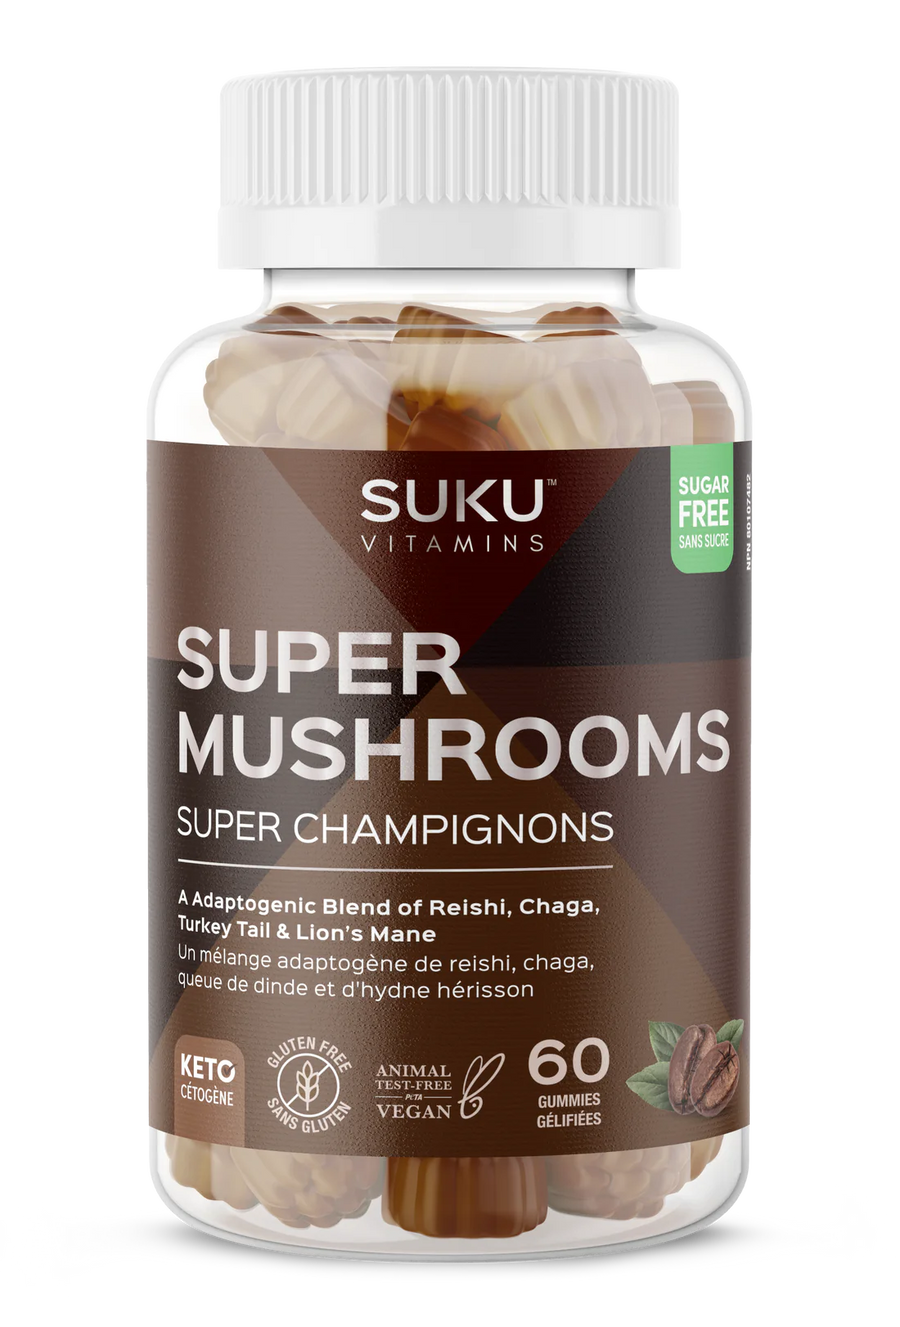 Suku Vitamins Super Mushrooms 60 Gummies